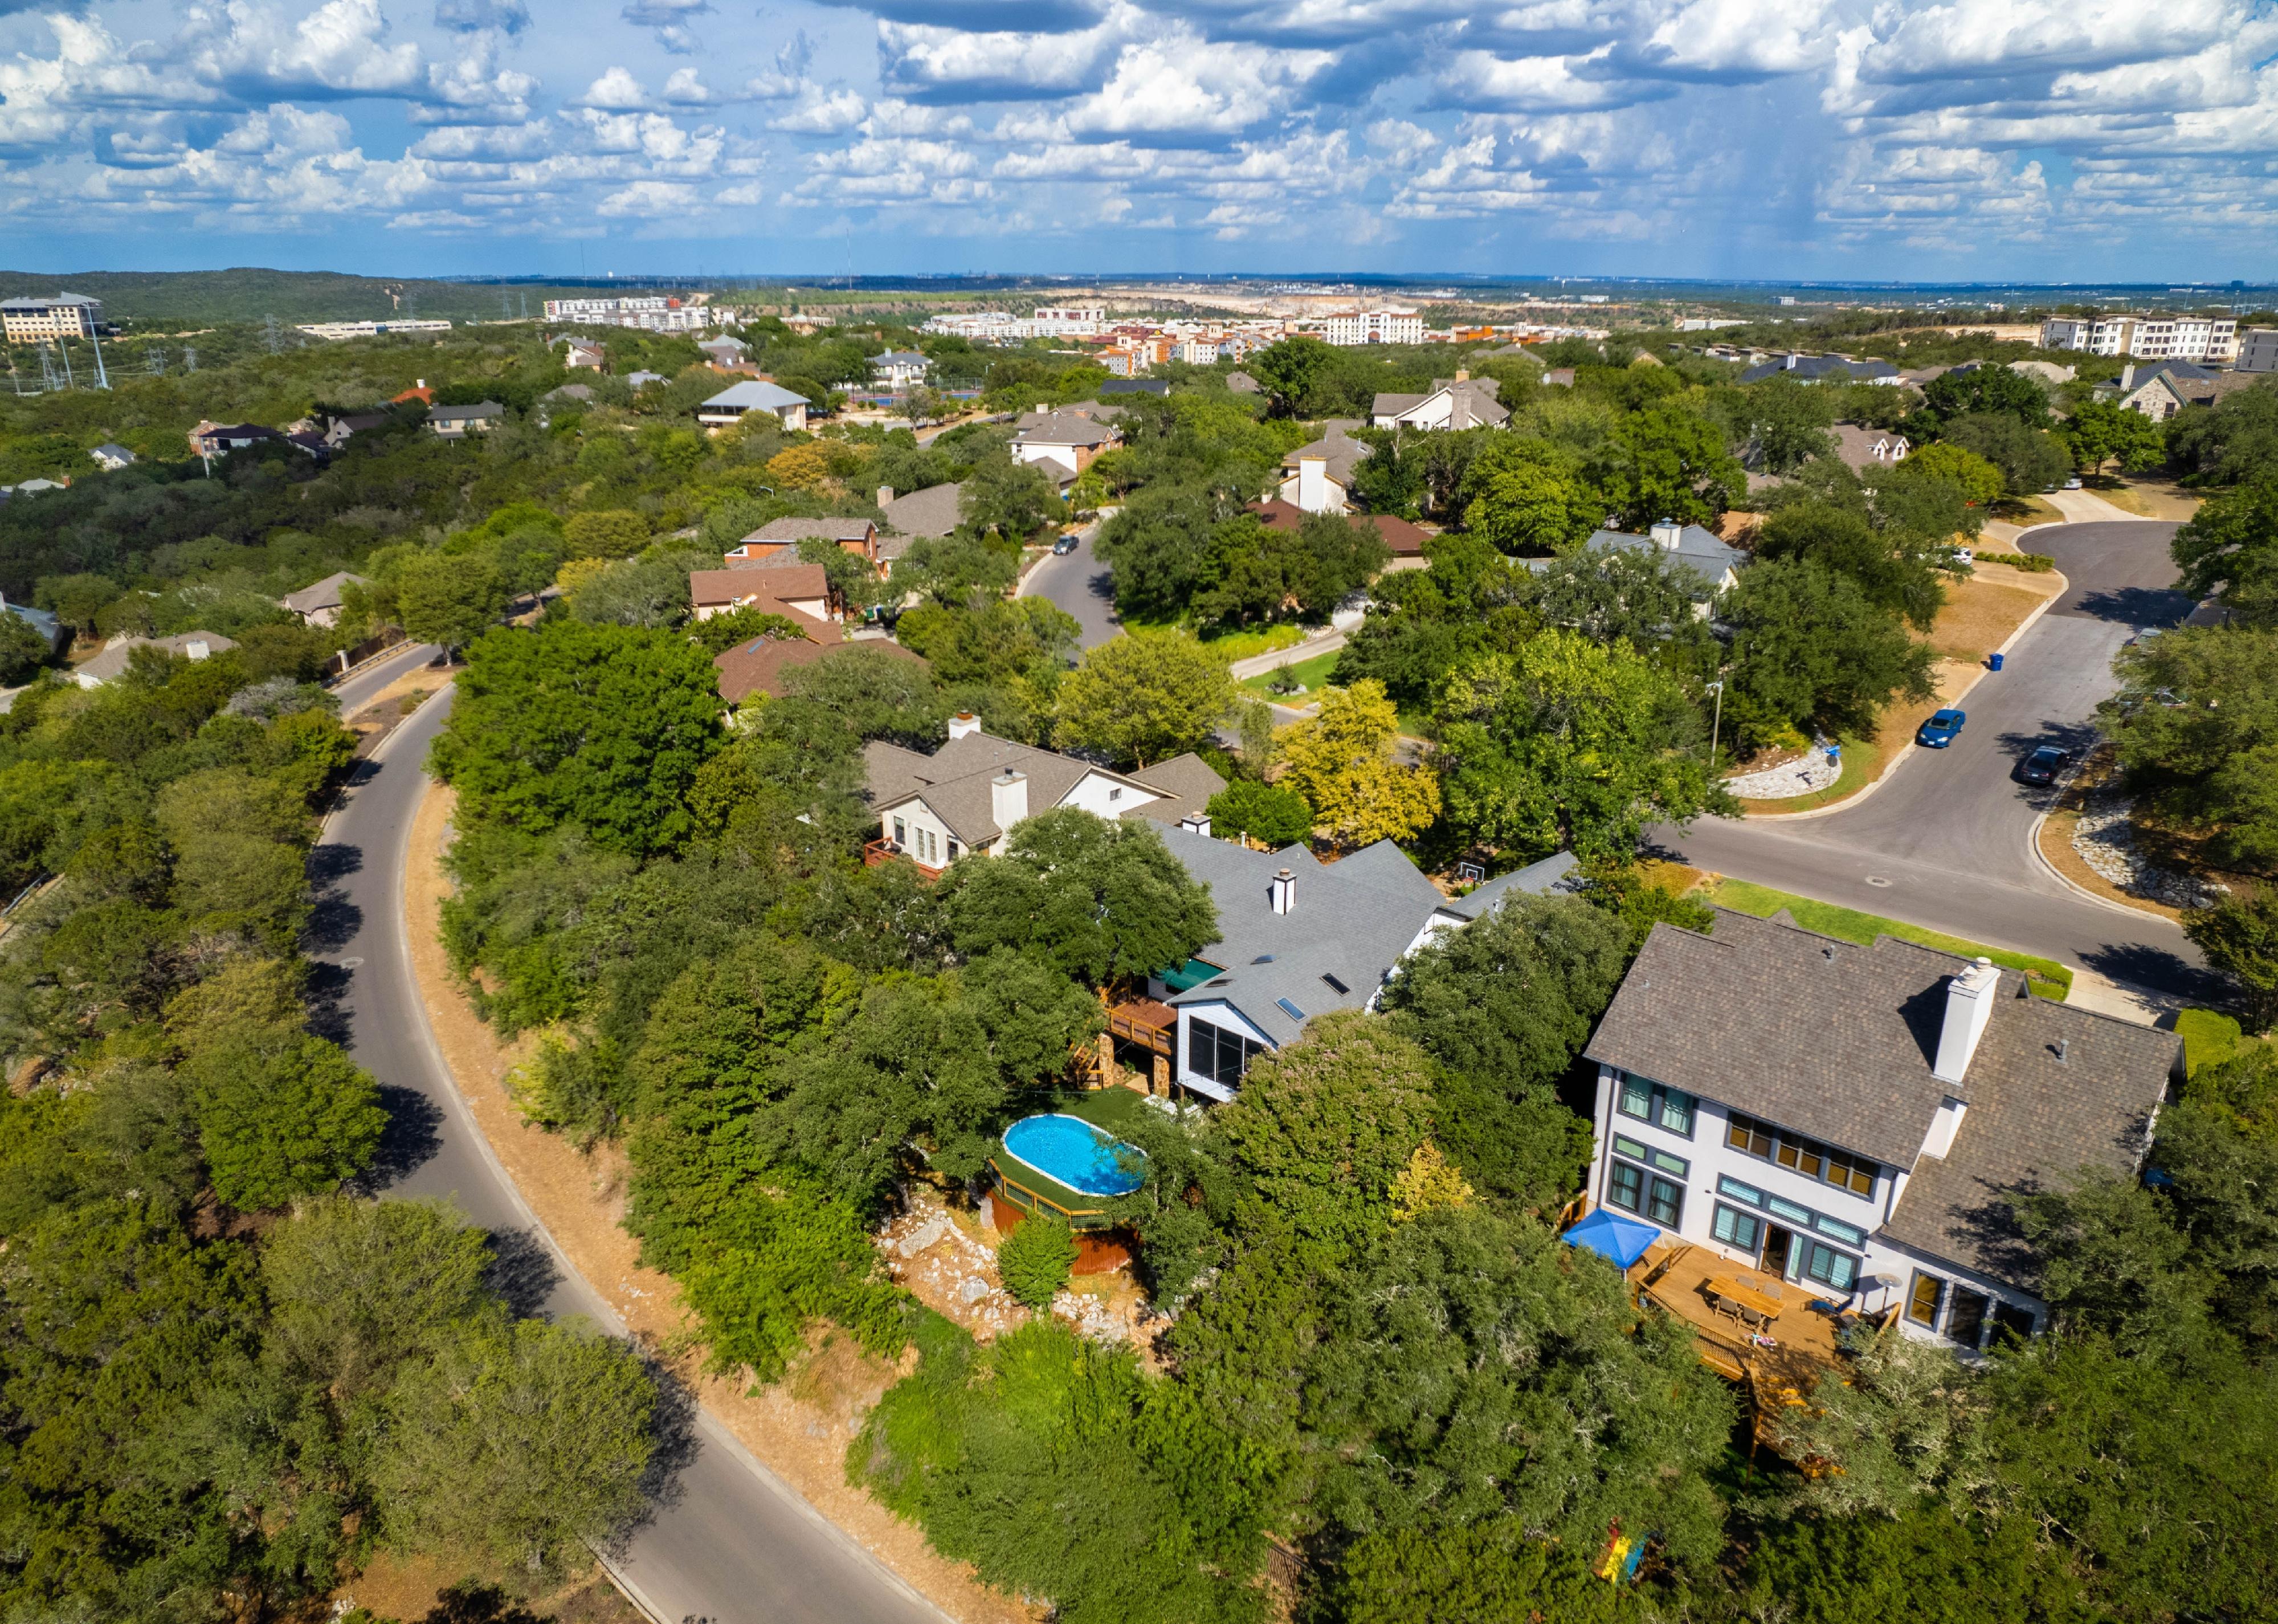 An aerial view of neighborhood development.